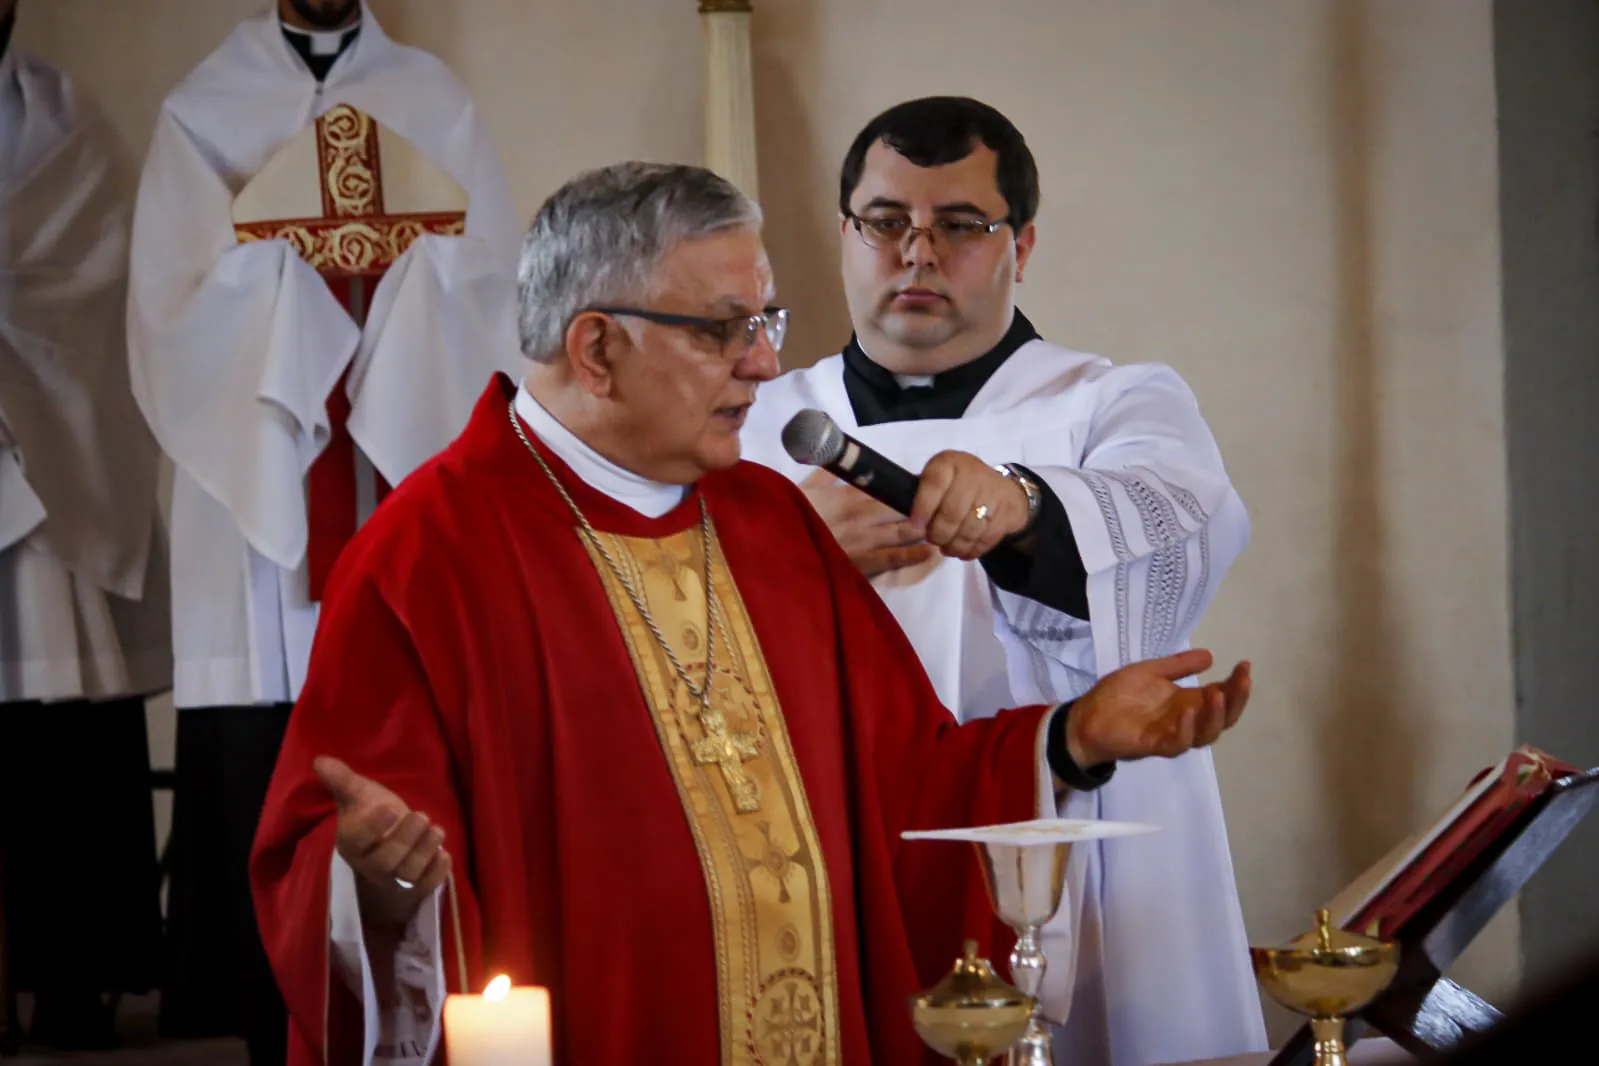 Missa de aniversário da cidade, celebrada pelo arcebispo de Niterói, Dom José Francisco Rezende Dias